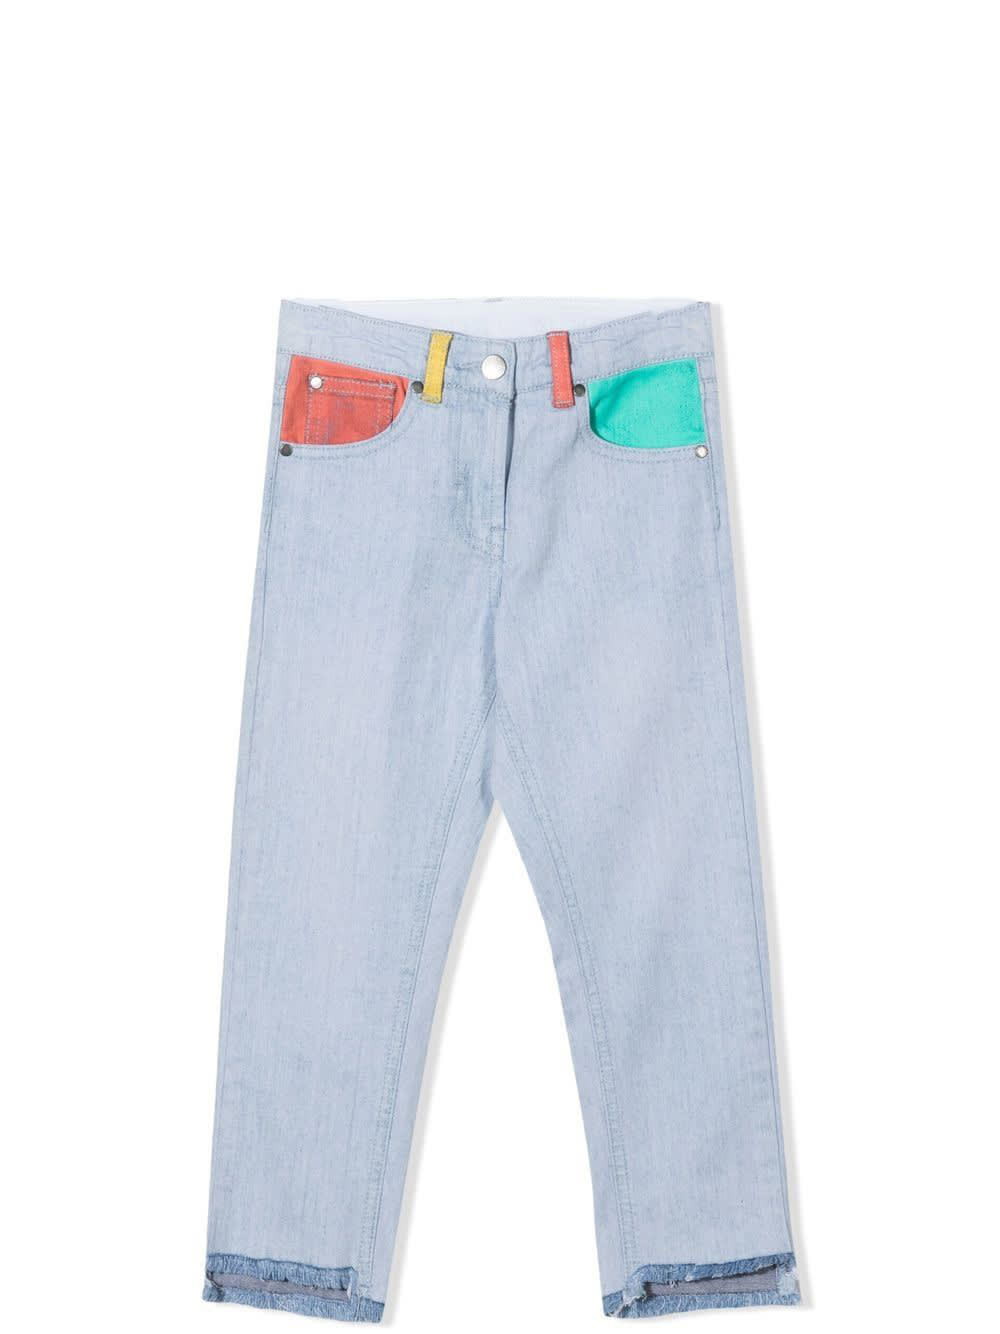 Stella Mccartney Babies' Denim Jeans In Light Blue